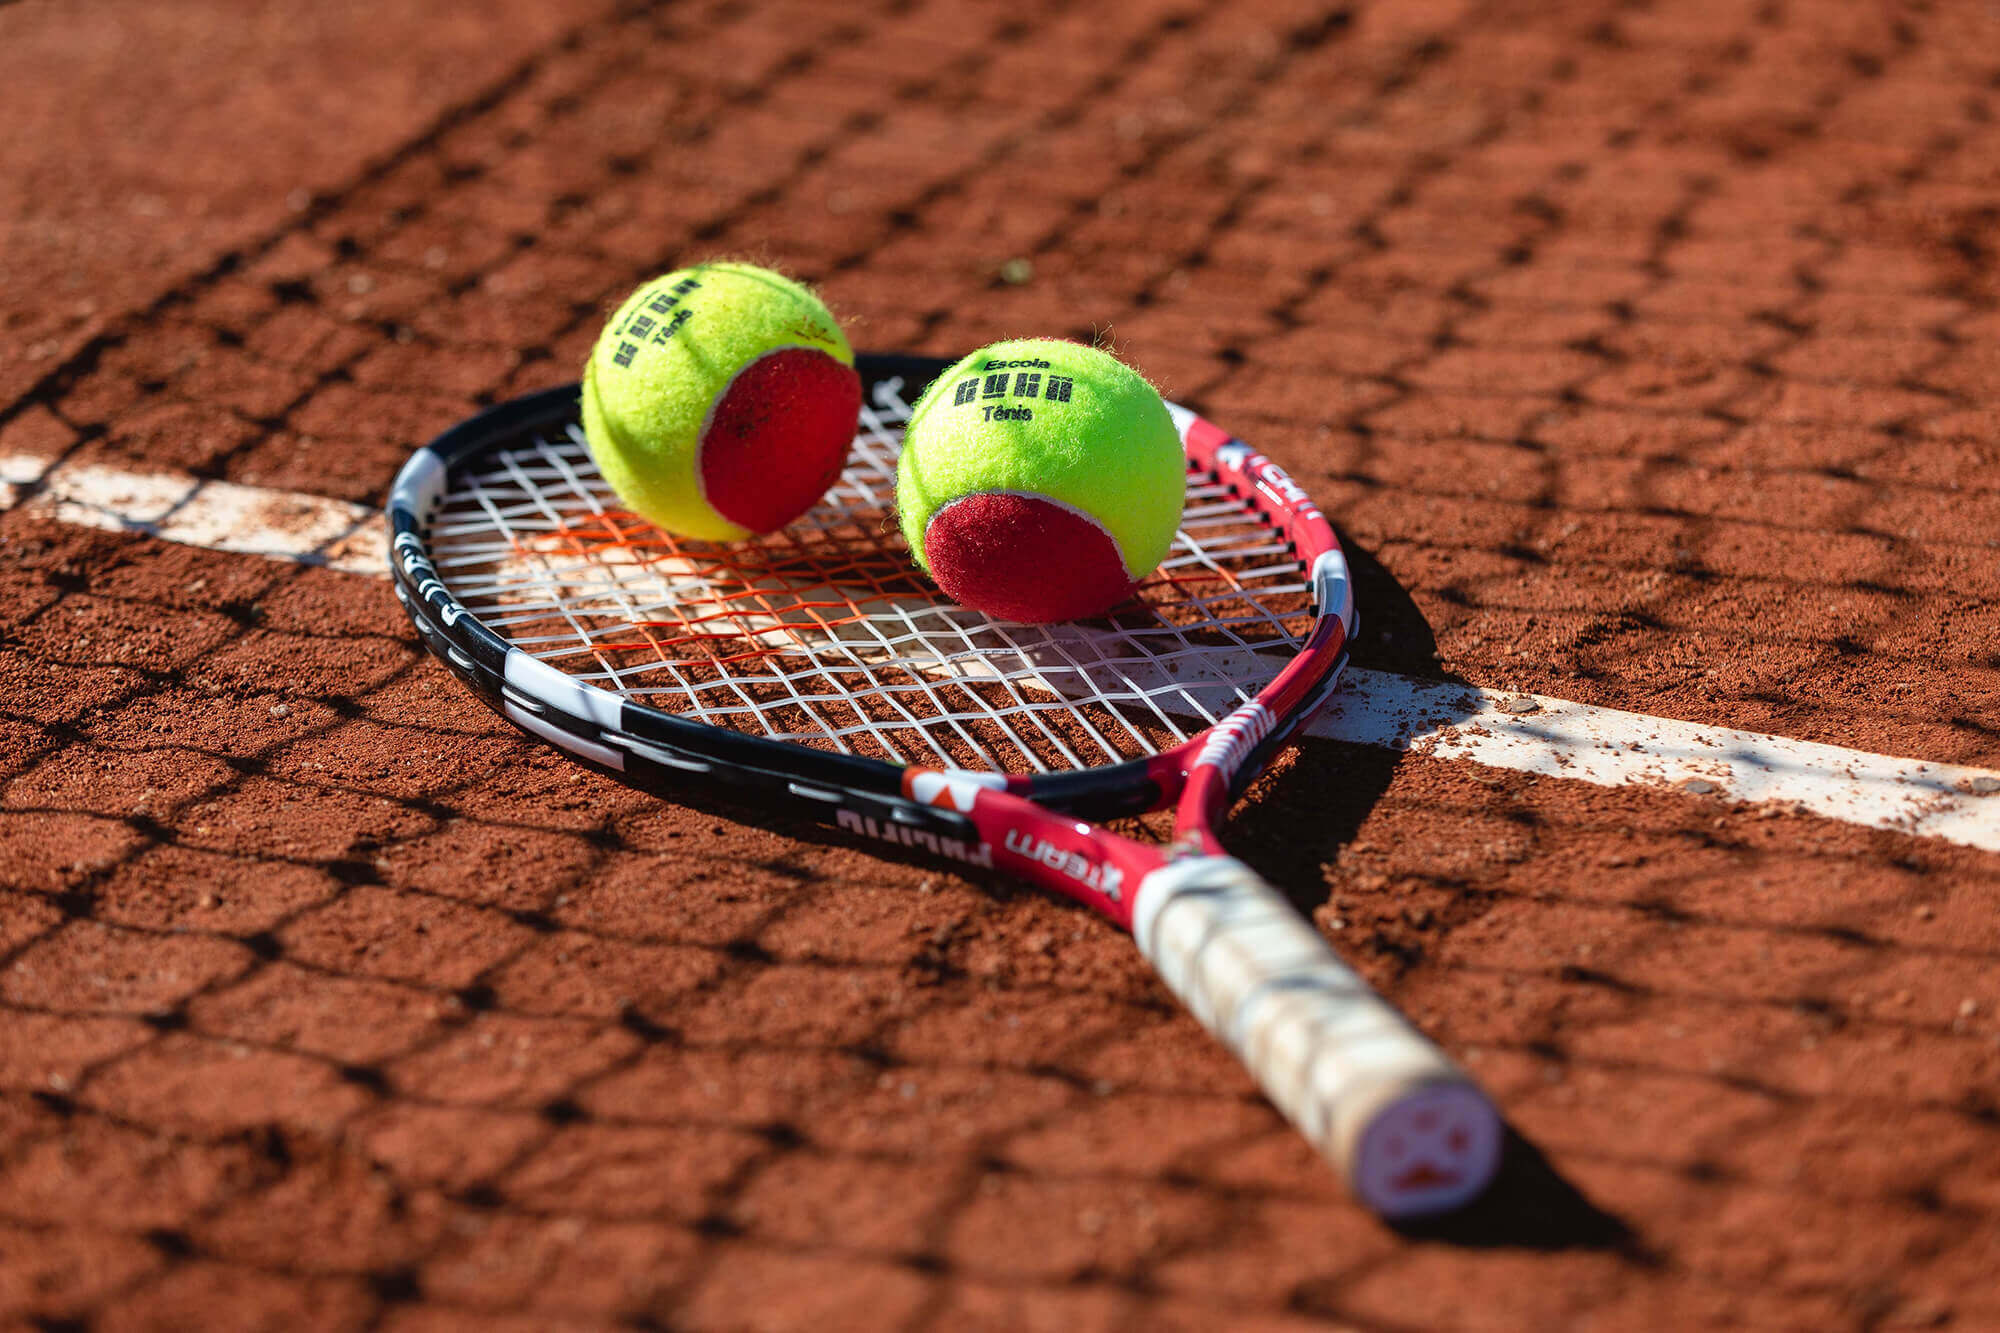 Dois jogadores estão jogando tênis na quadra de tênis.